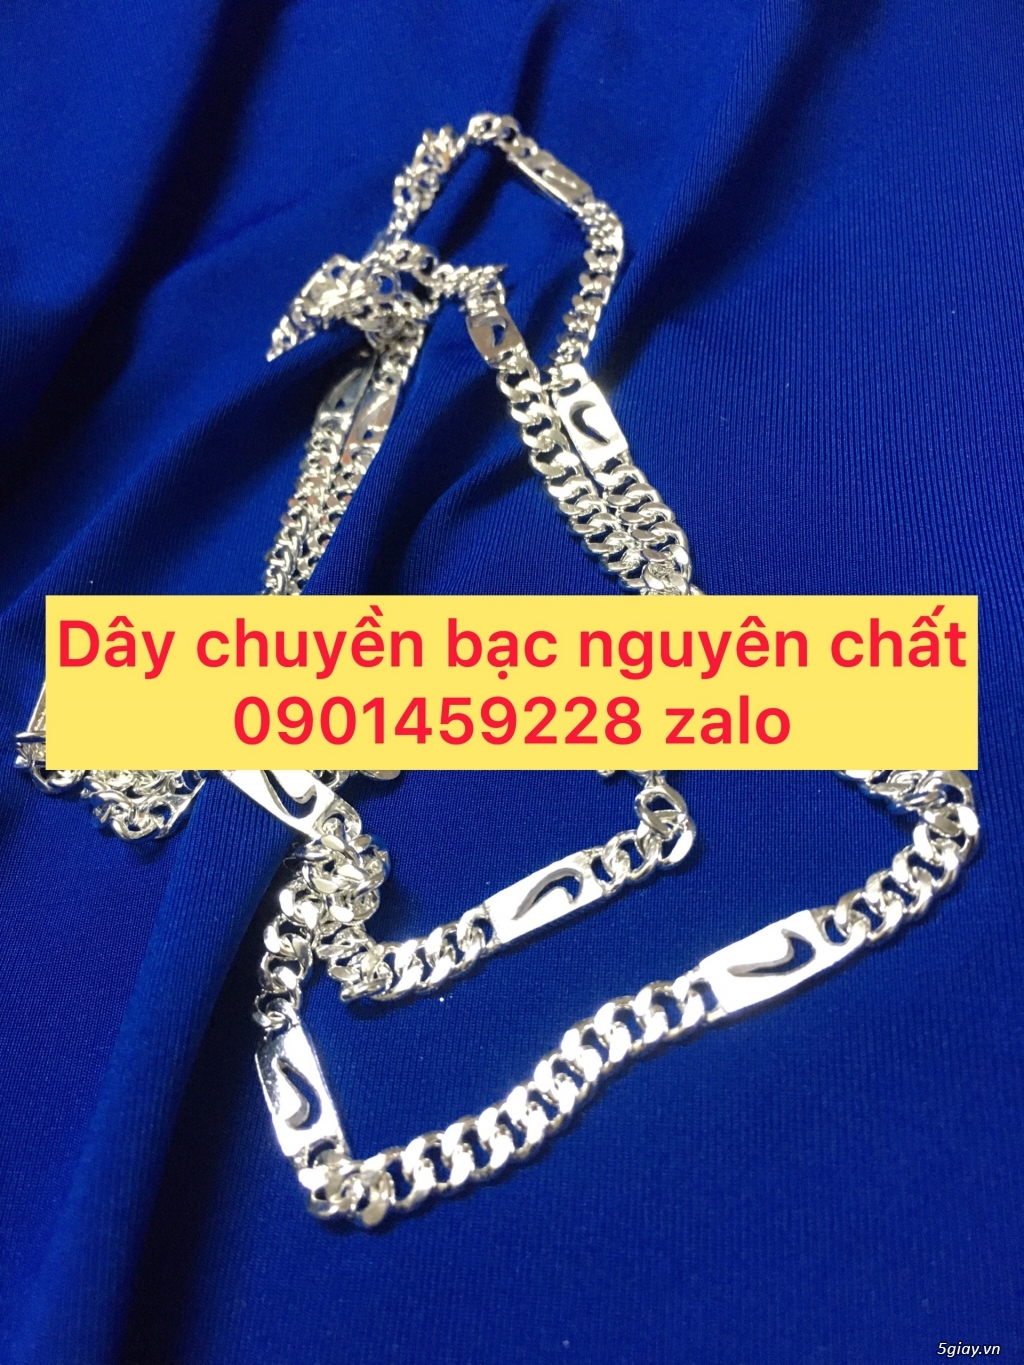 day chuyen bac nguyen chat